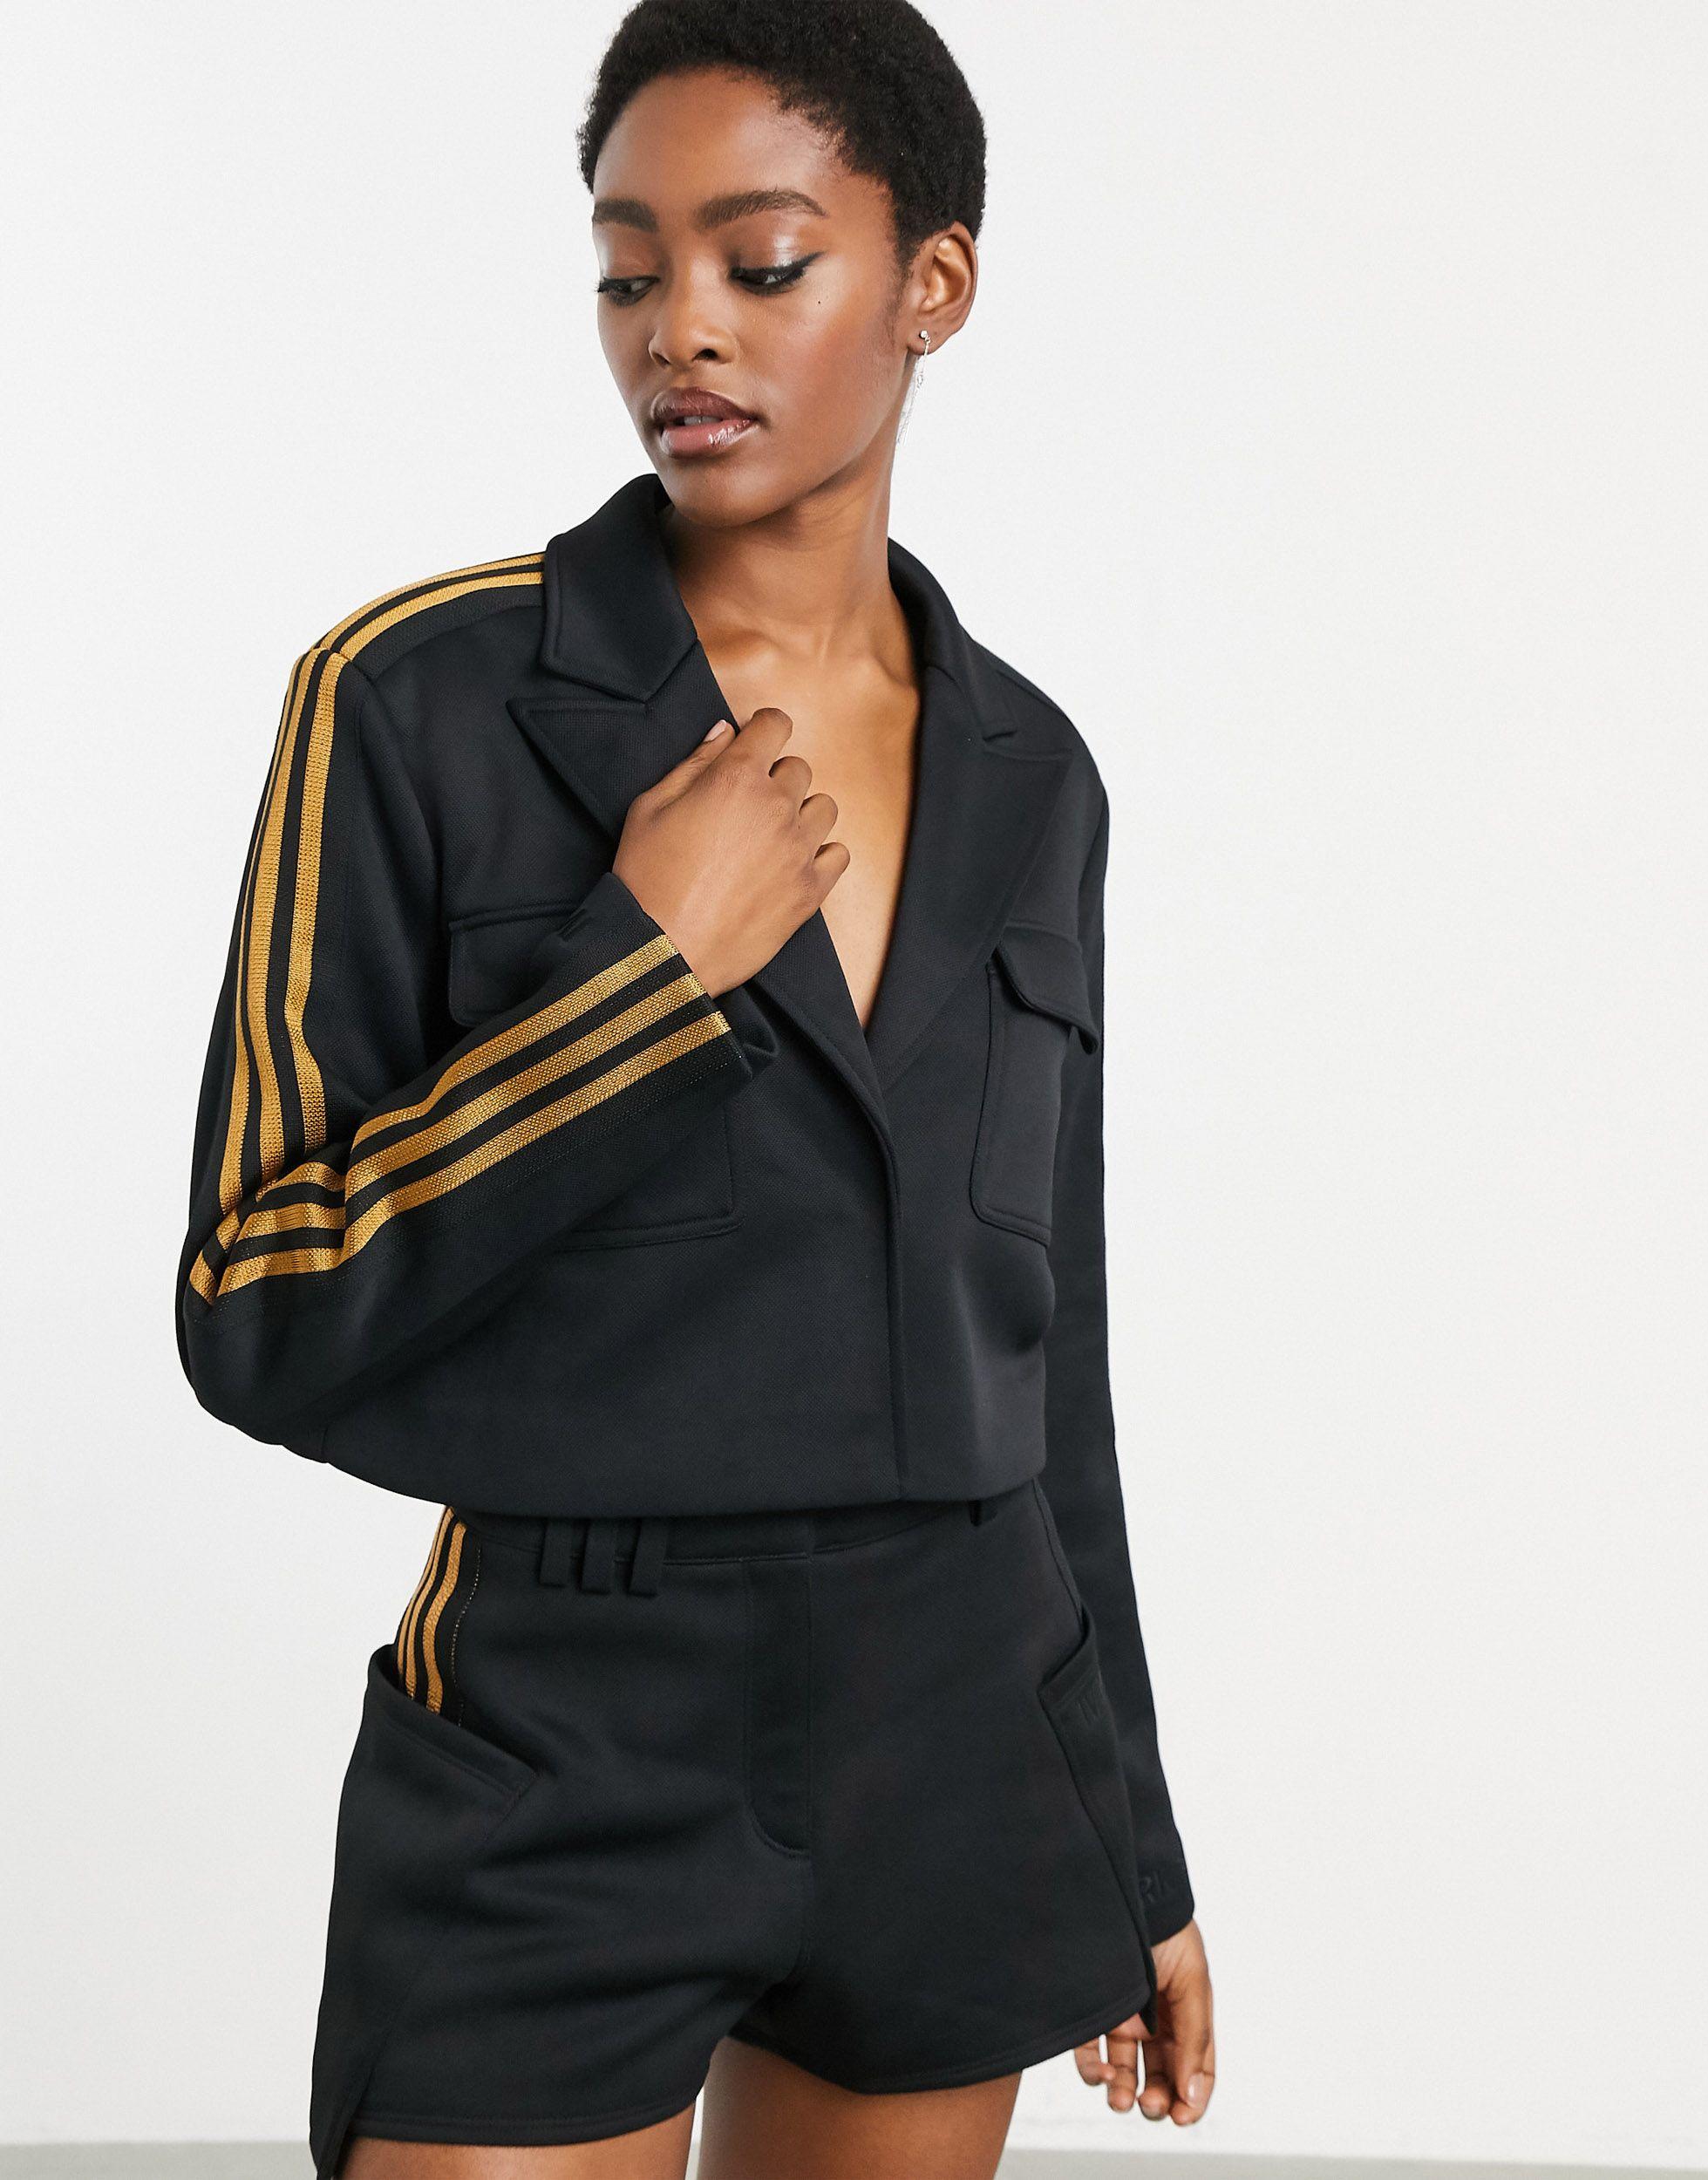 Ivy Park Adidas X Cropped Blazer in Black | Lyst Canada